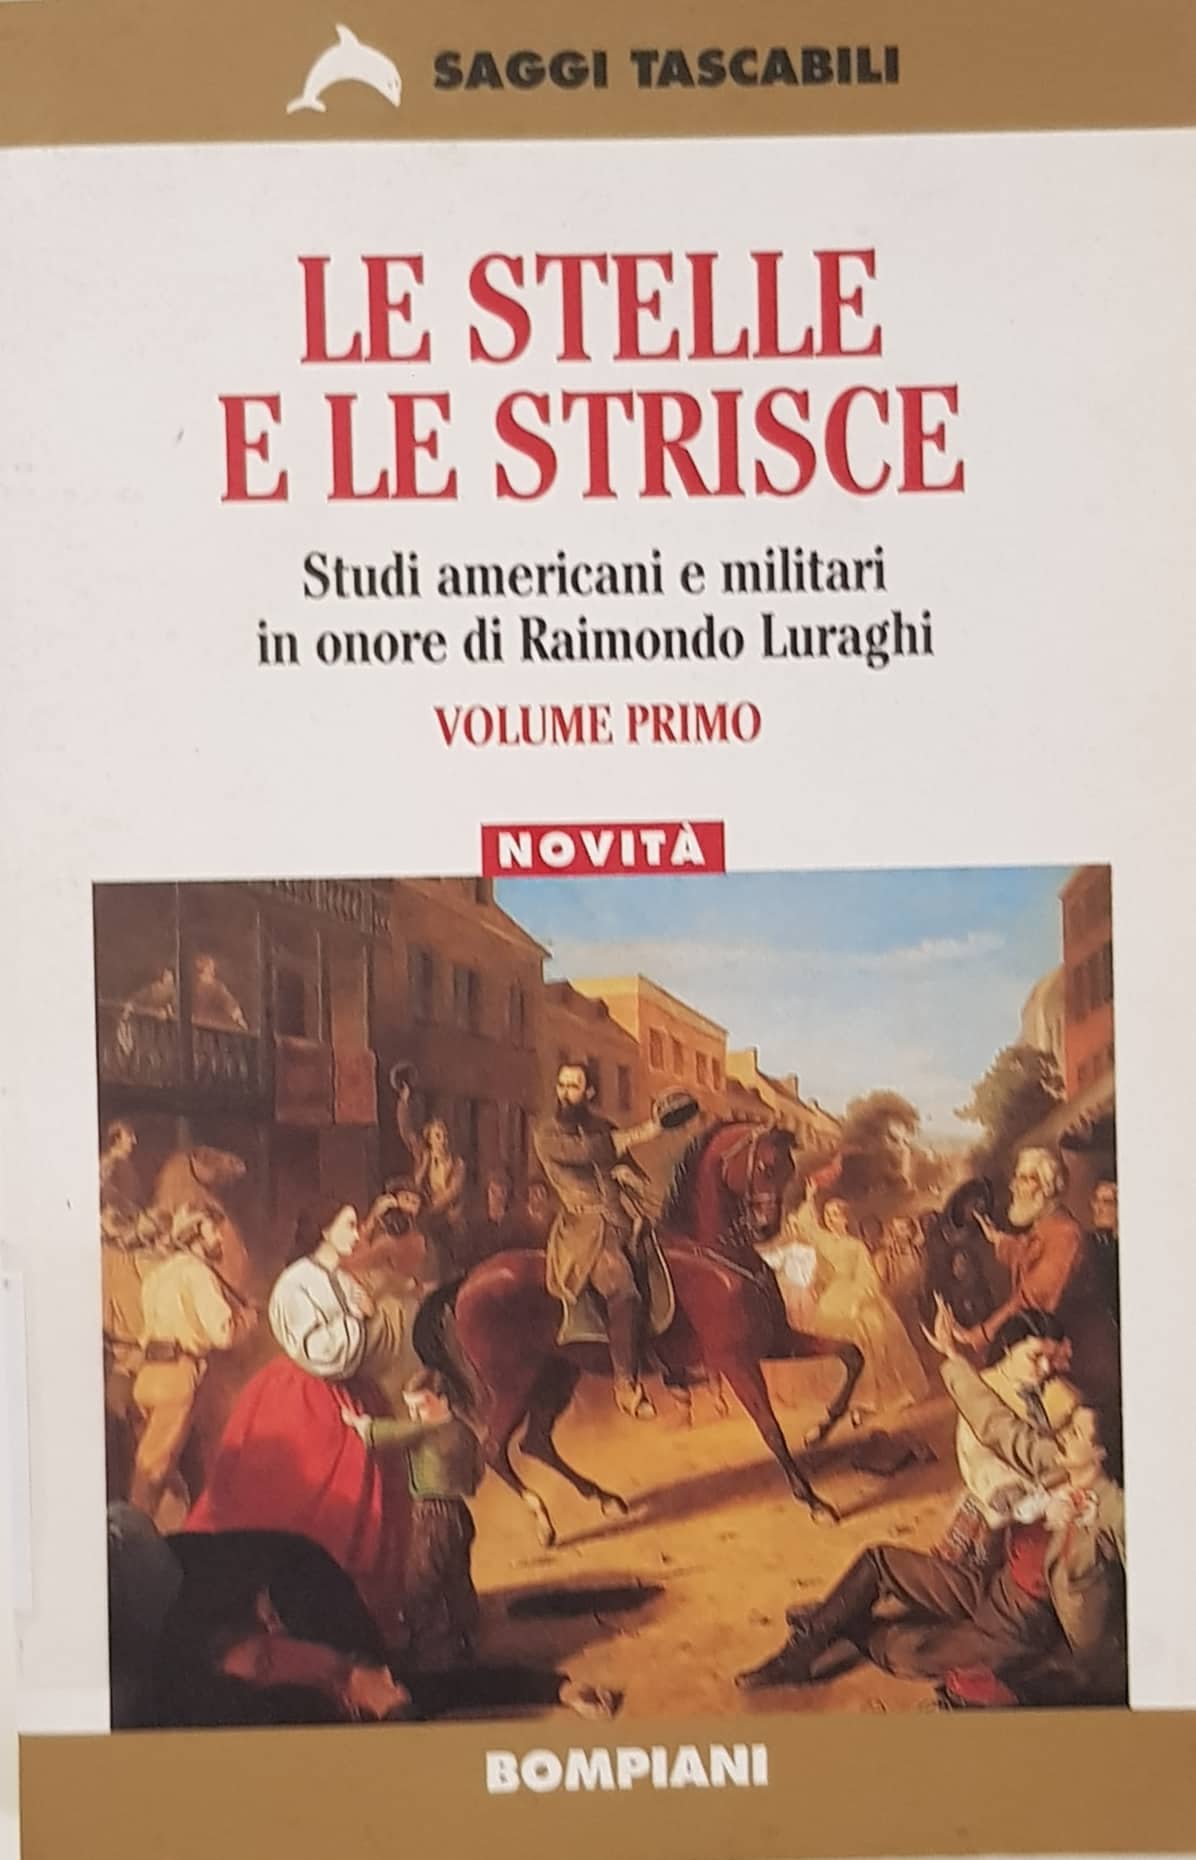 Copertina di Le stelle e le strisce - Studi americani e militari in onore di Raimondo Luraghi (Volume Primo)